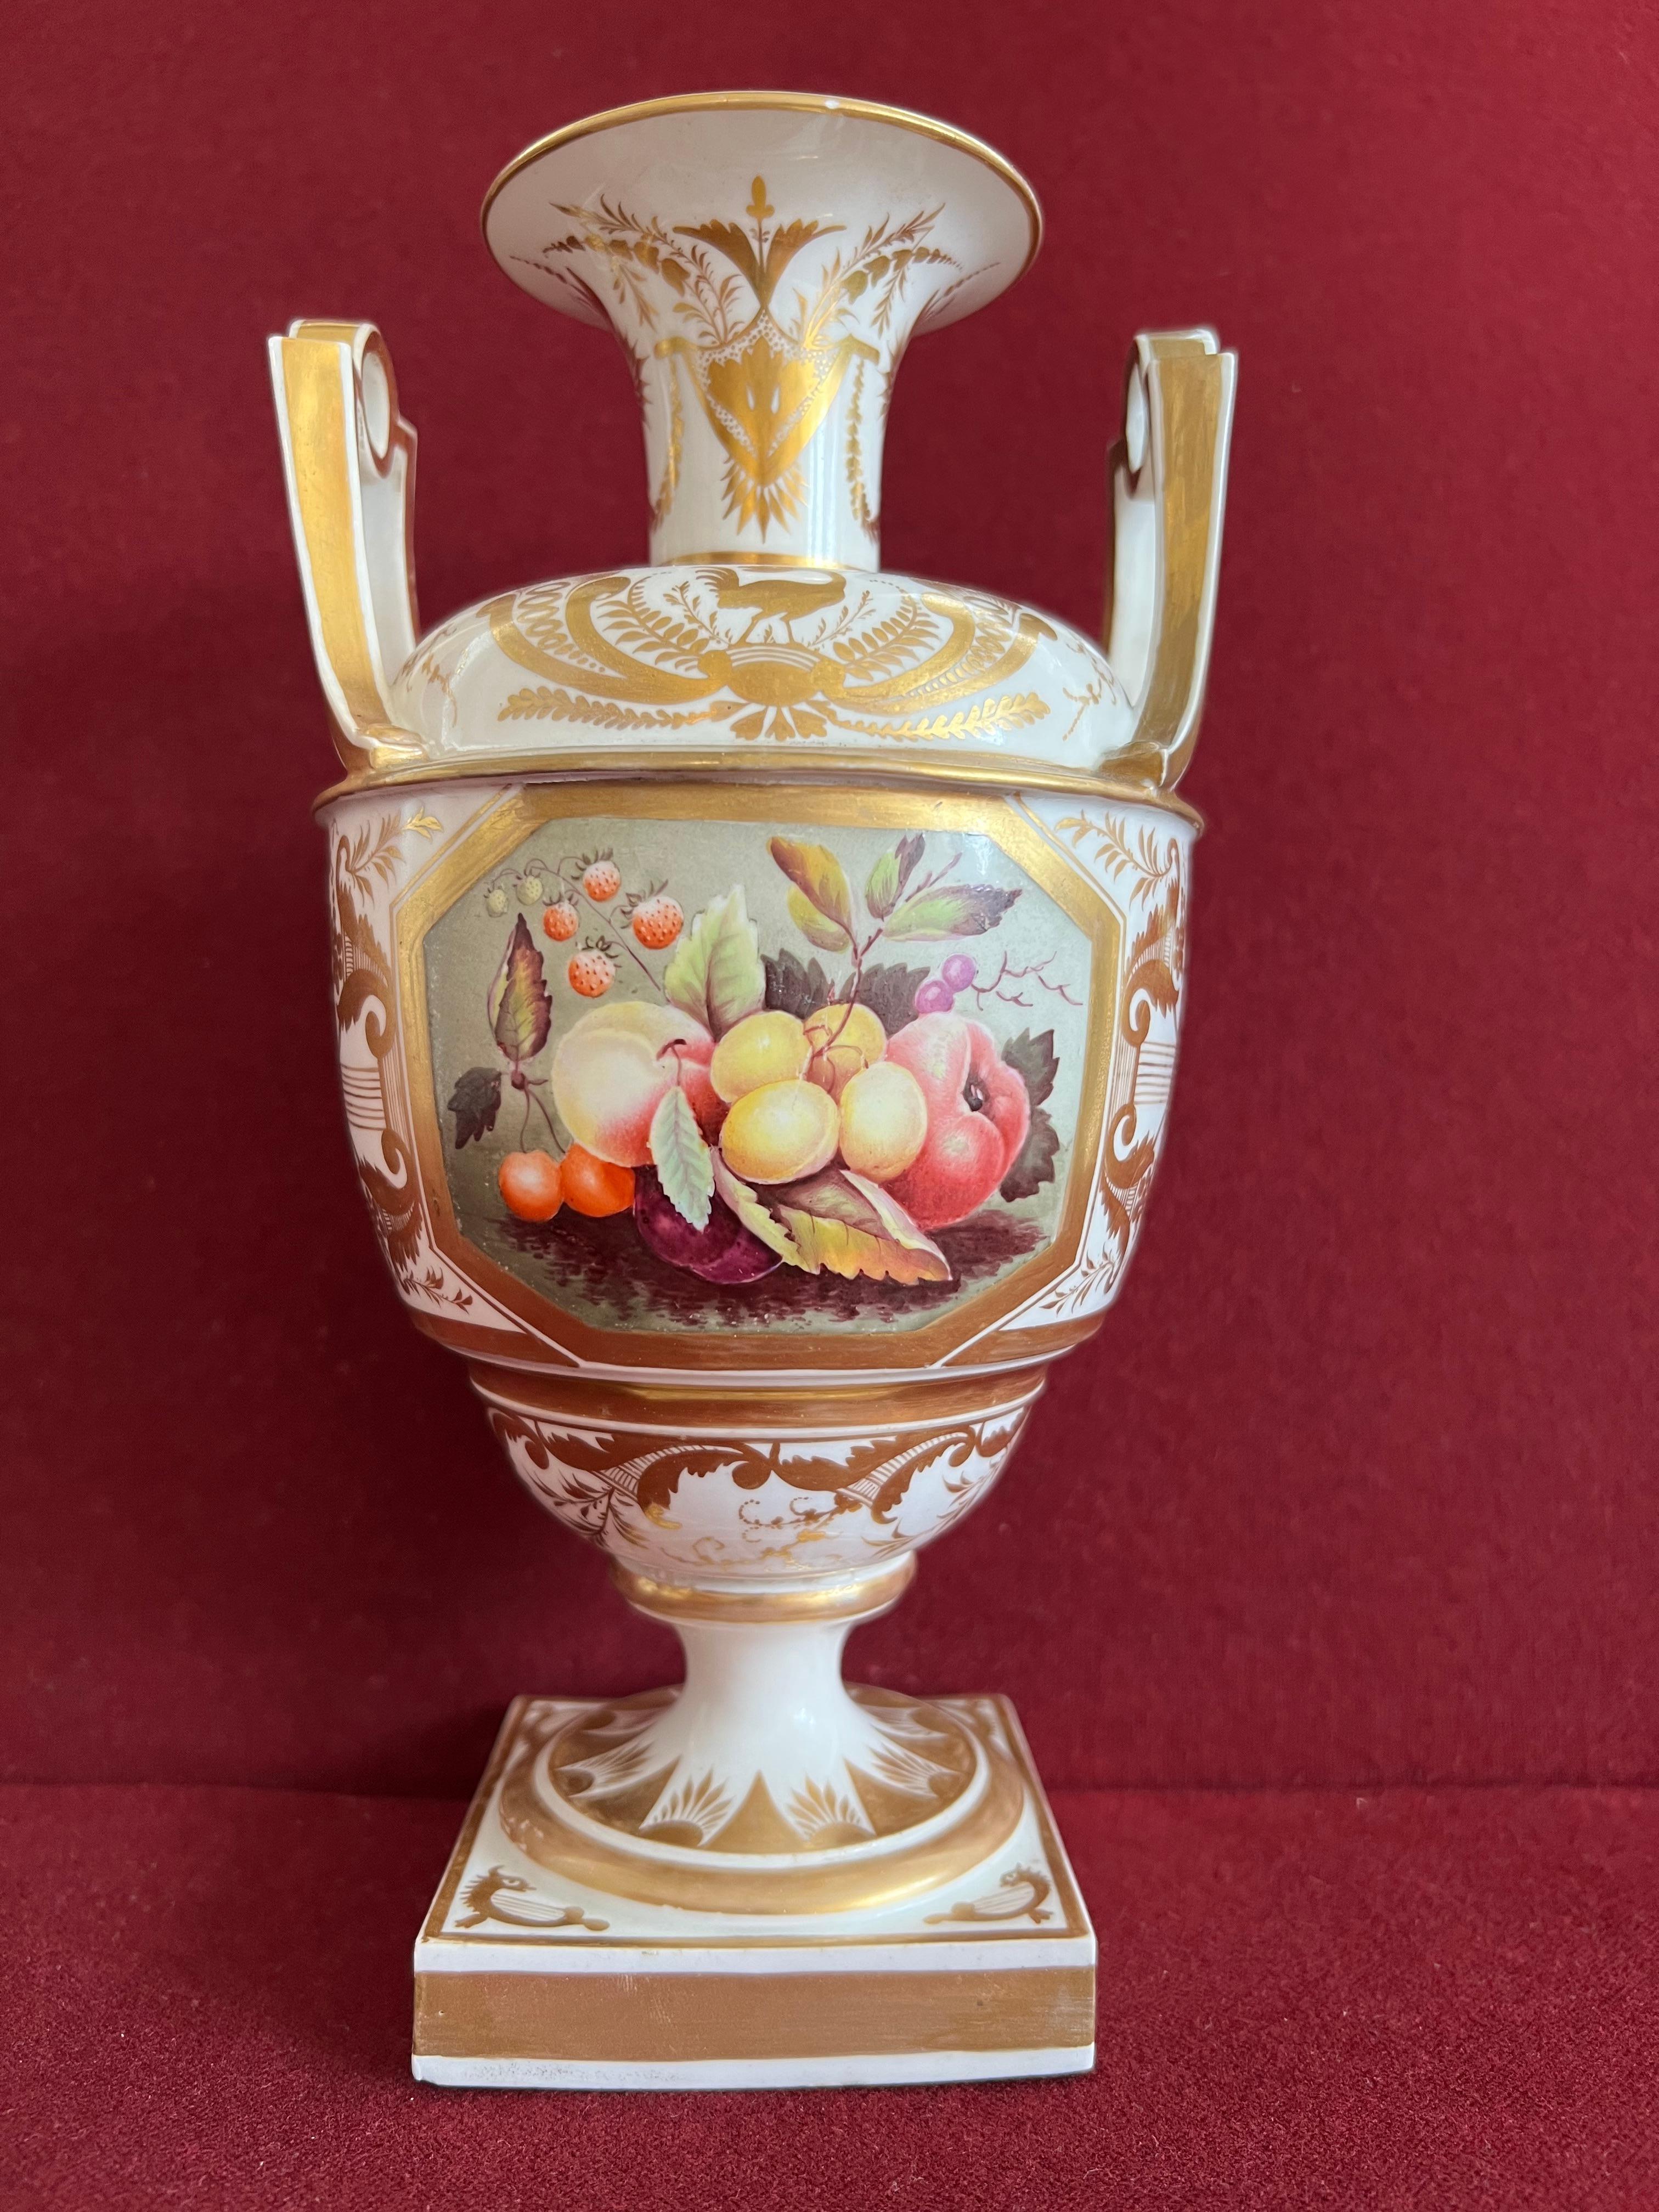 Rare vase en porcelaine de Derby, datant de 1815, de forme classique, décoré d'un panneau de fruits finement peint à la manière de Thomas Steel. Dorure finement exécutée à la manière de James Clark.

Condition : Restauration professionnelle d'une